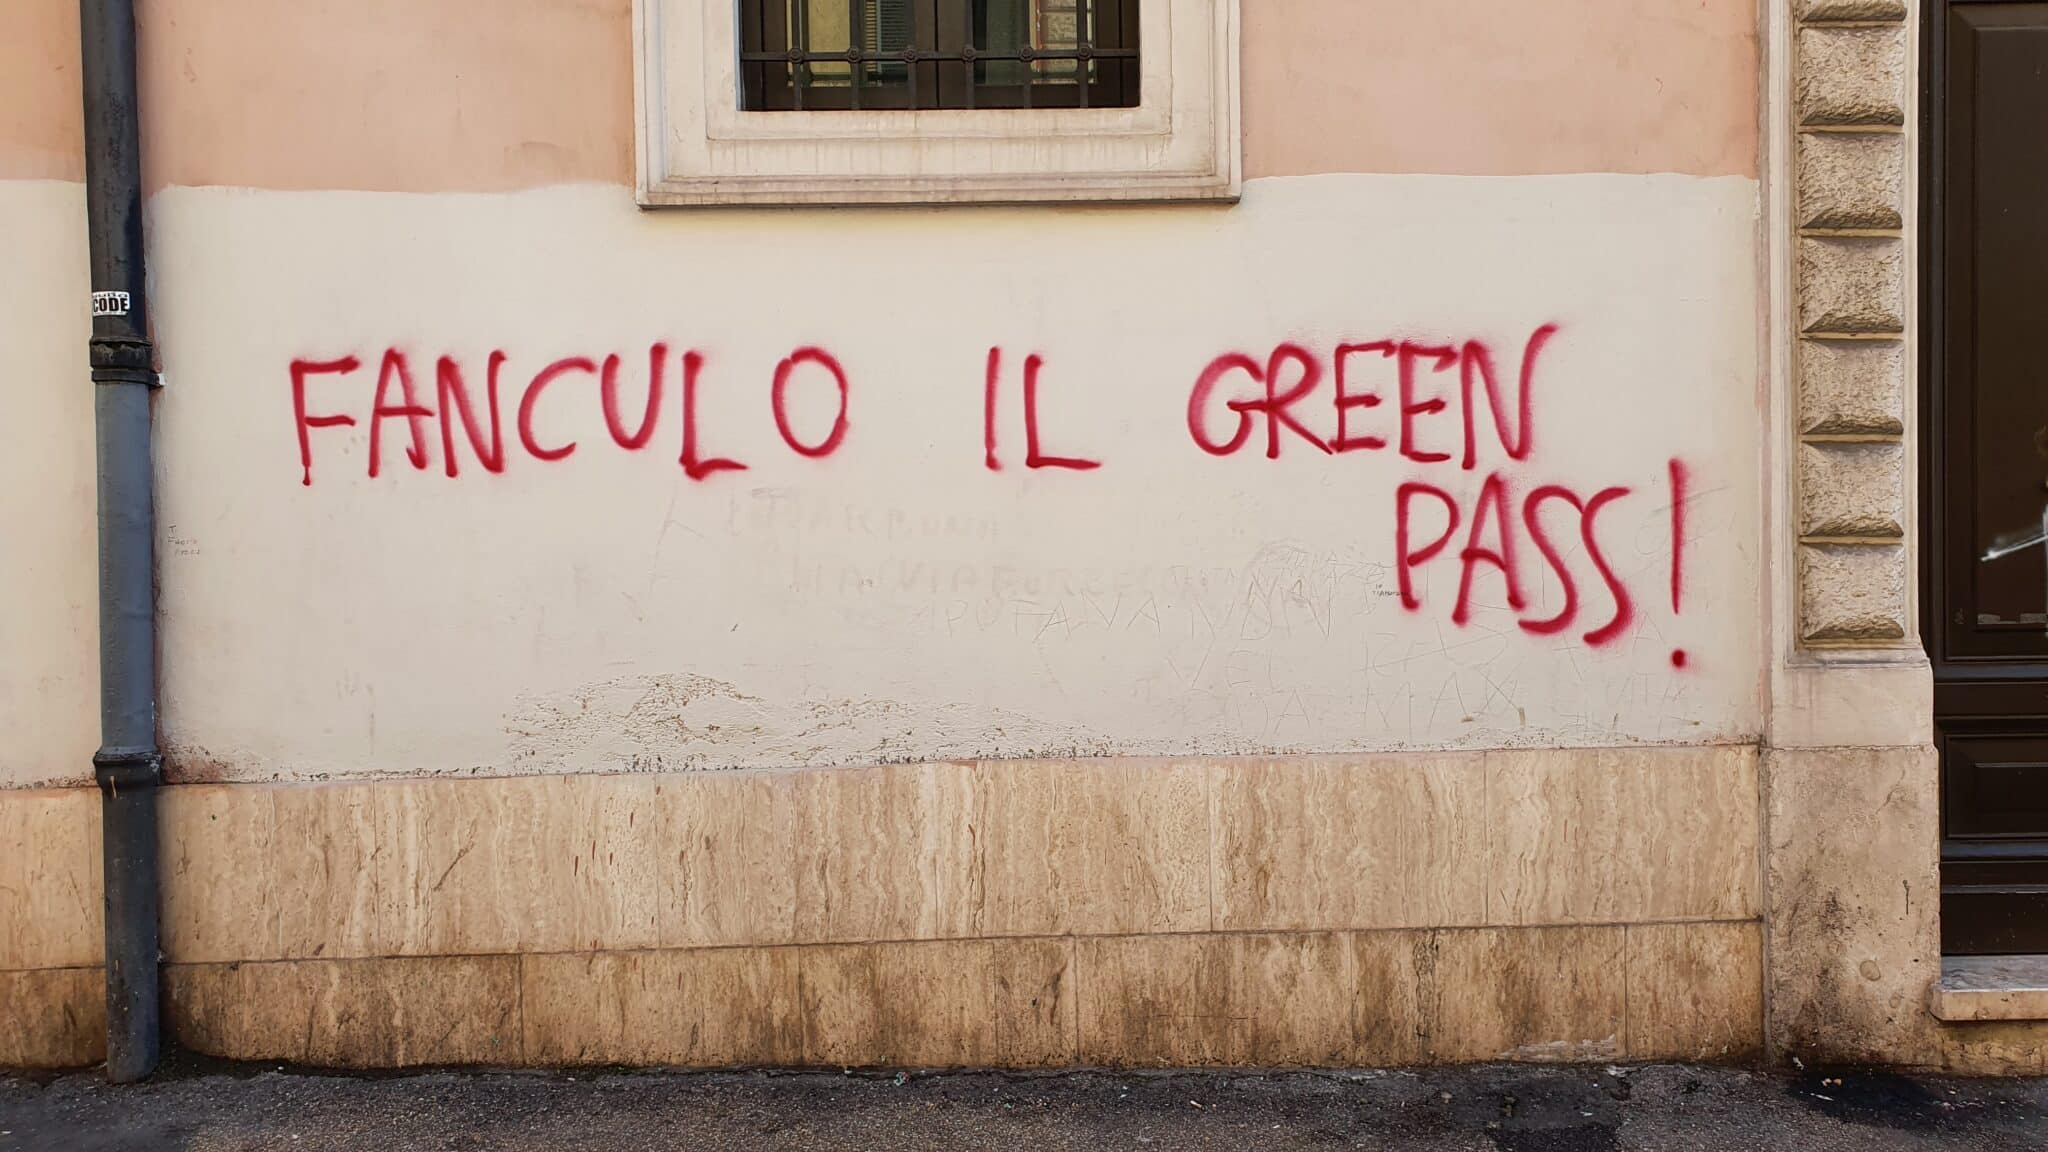 Un pintada contra el Green Pass, el pasaporte Covid italiano, en una calle de Roma.